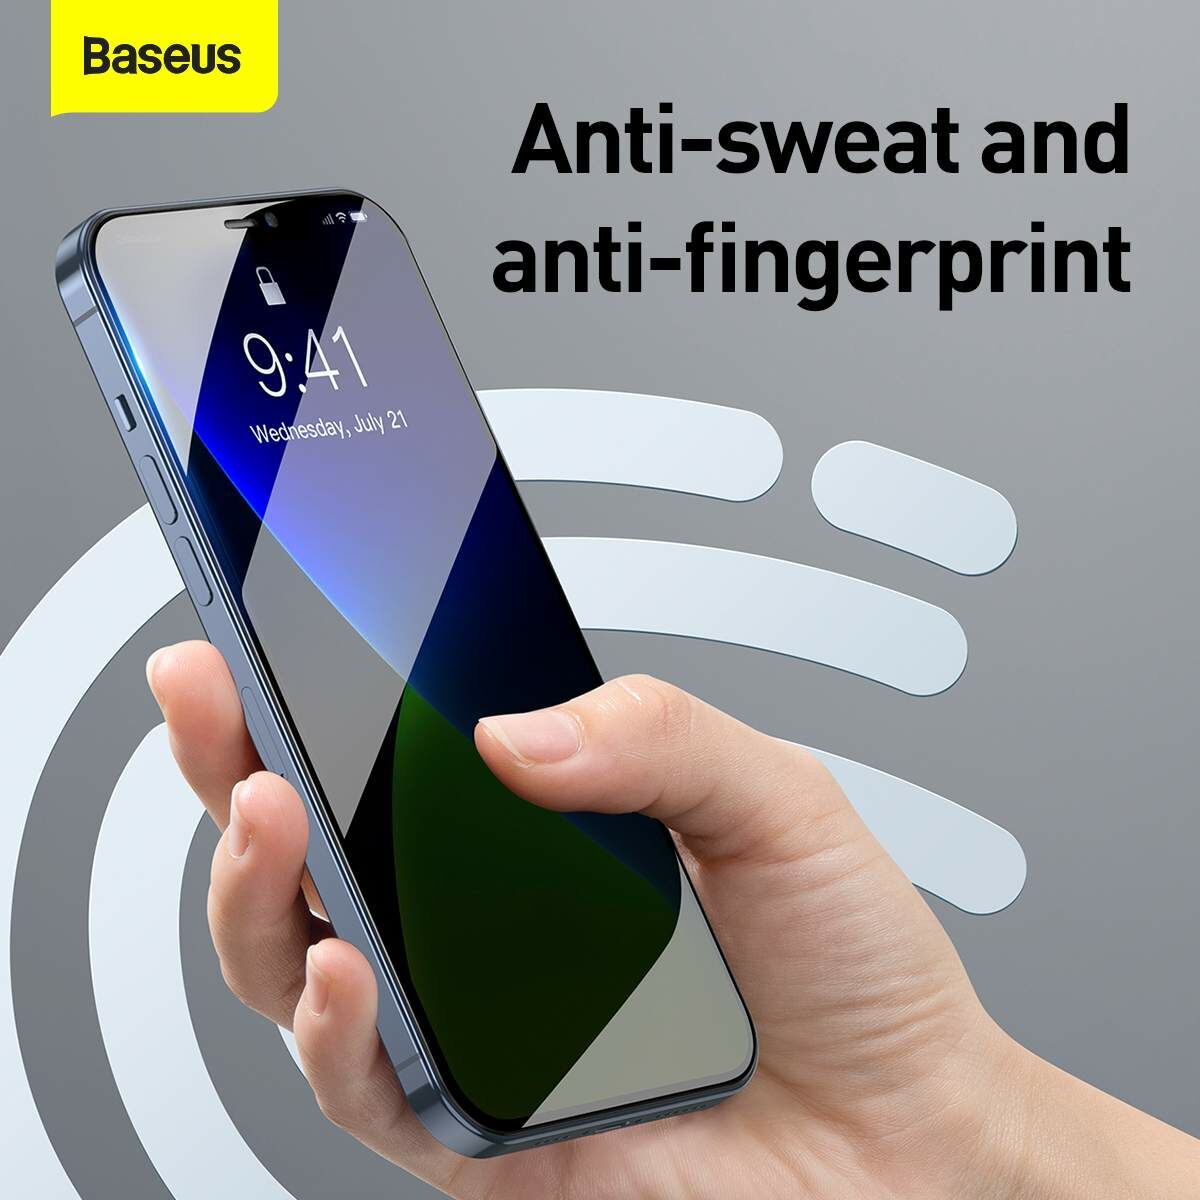 Baseus iPhone 12/ 12 Pro 0.3 mm, teljes felületre lekerekített edzett üveg, betekintés védelem (2db), fekete (SGAPIPH61P-TG01)